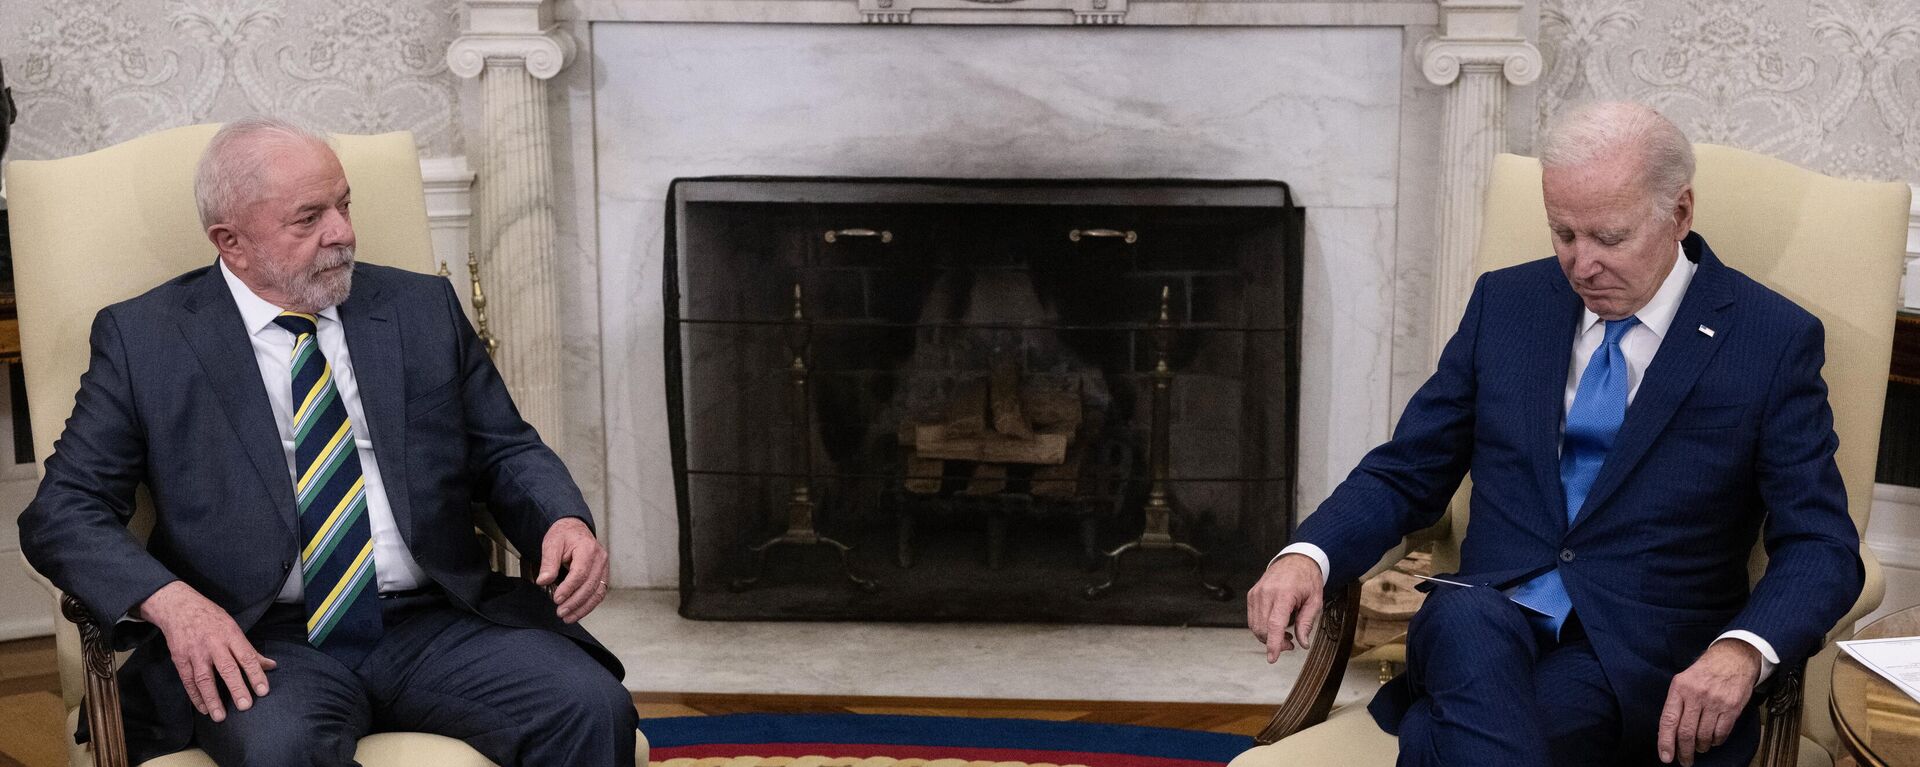 O presidente dos EUA Joe Biden se encontra com o presidente brasileiro Luiz Inácio Lula da Silva no Salão Oval da Casa Branca em Washington, DC, em 10 de fevereiro de 2023 - Sputnik Brasil, 1920, 20.04.2023